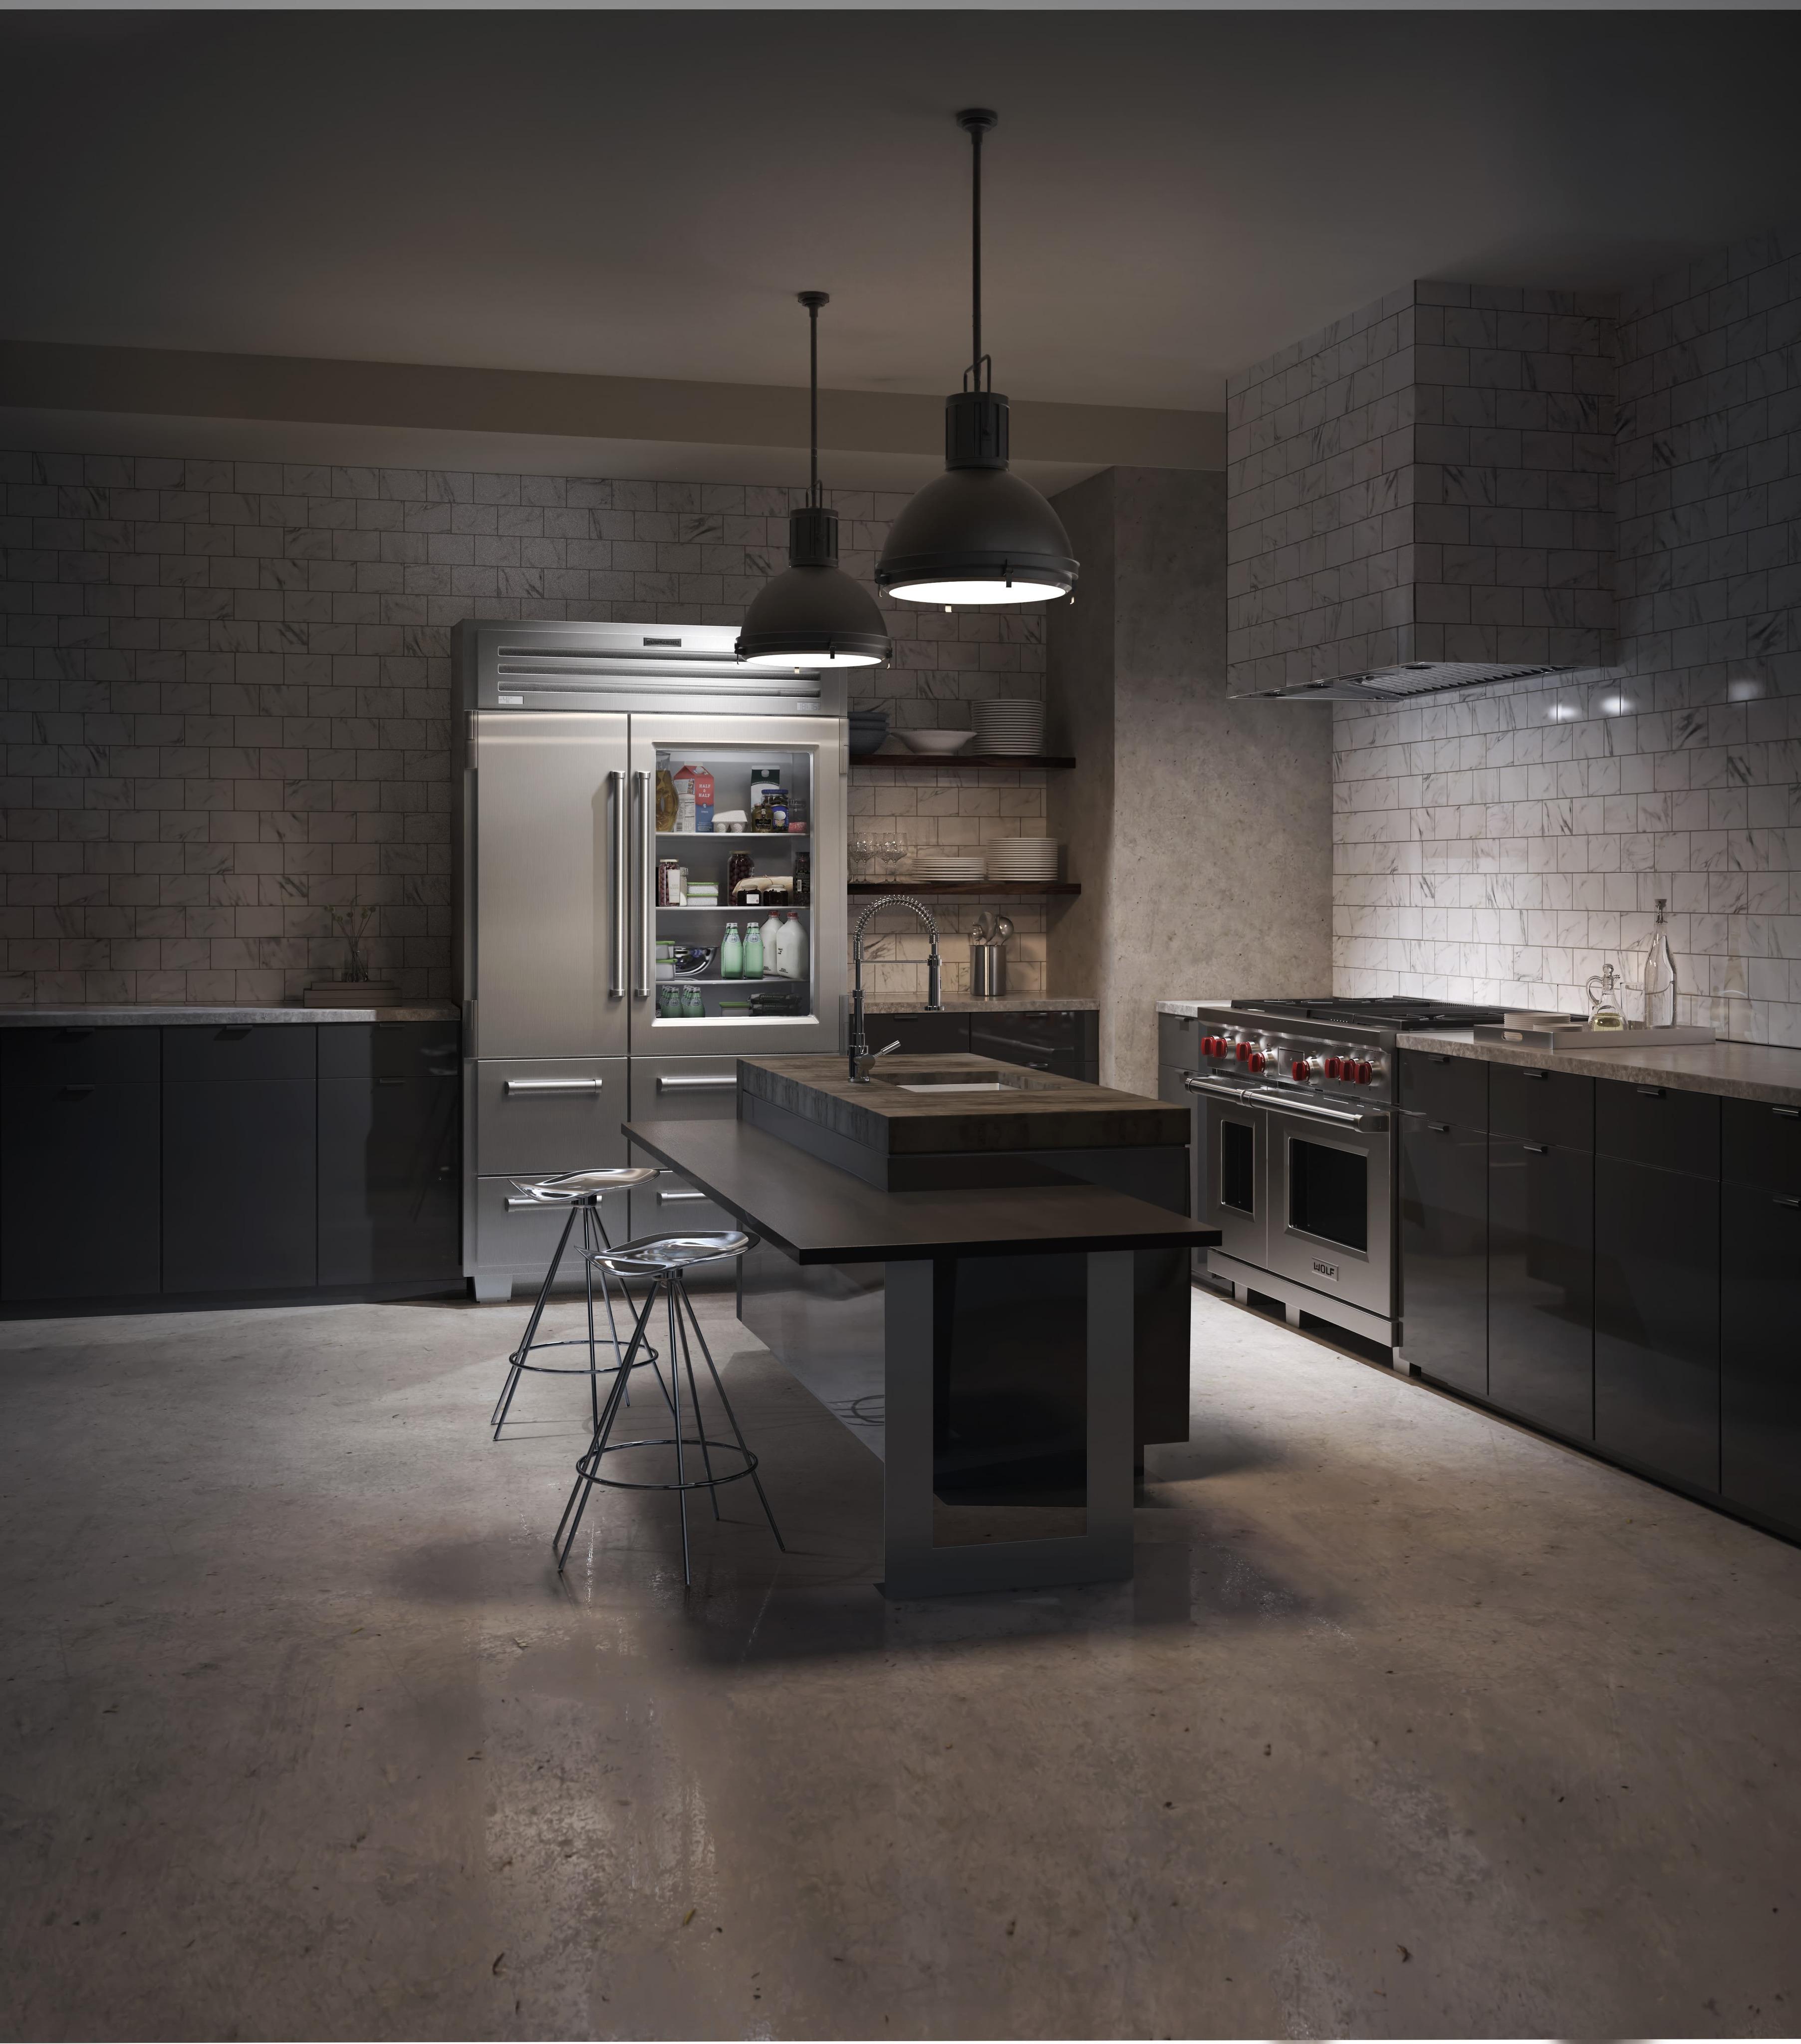 SubZero Pro-48-Kühlgerät #küche #luxus #kühlschrank ©SubZero